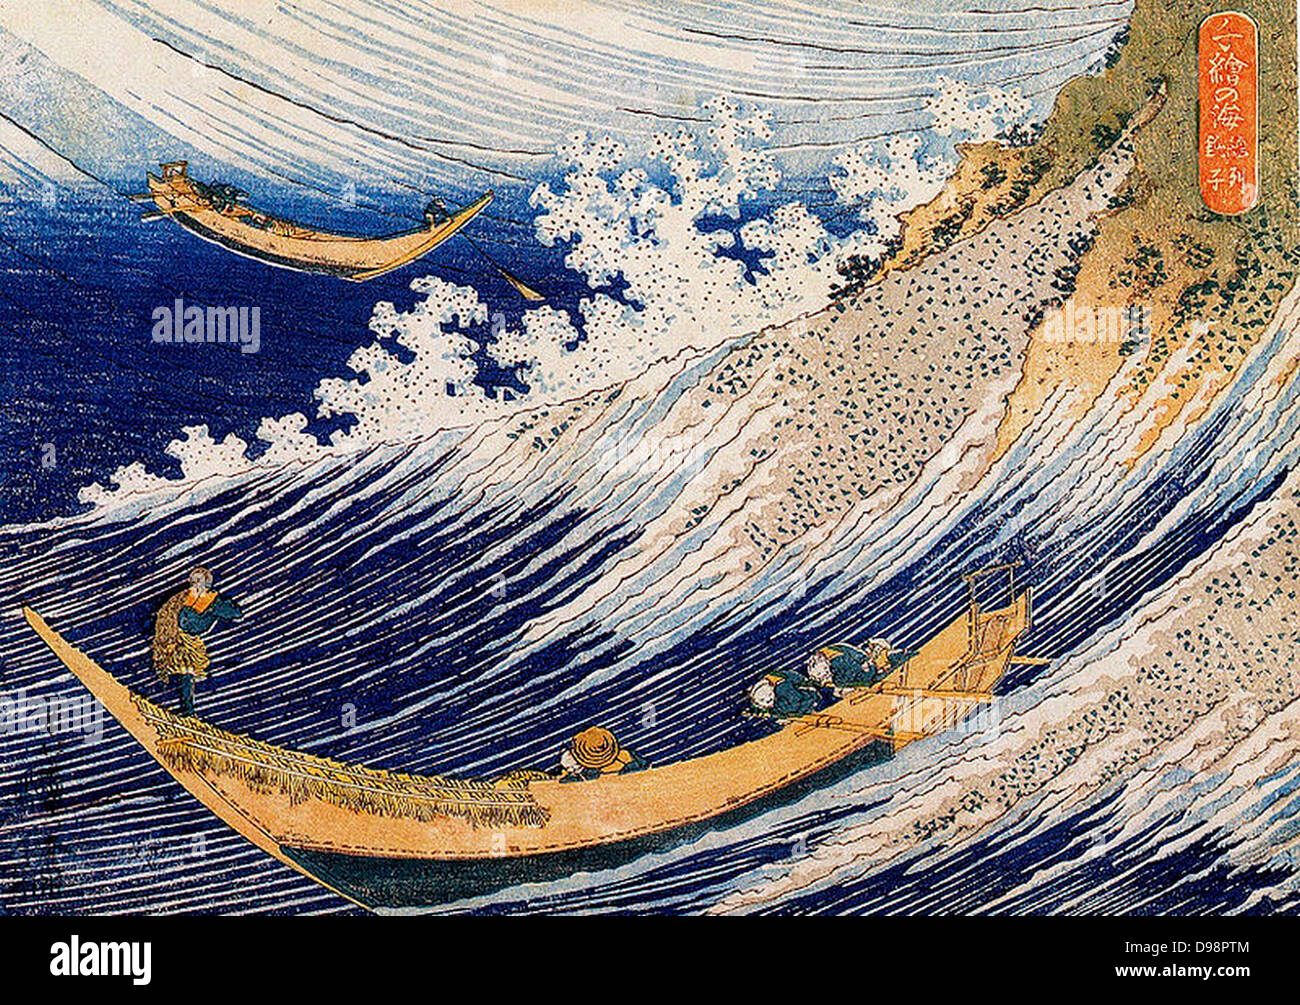 Eine wilde Meer bei Choshi: Aus 'Tausend Bilder der Ozean' c 1833. Katsushika Hokusai (1760-1849) japanischen Ukiyo-e Künstlers. Zwei offene Fischerboote kämpfen in riesigen Wellen. Wasser Gischt Ruder Ruder Stockfoto